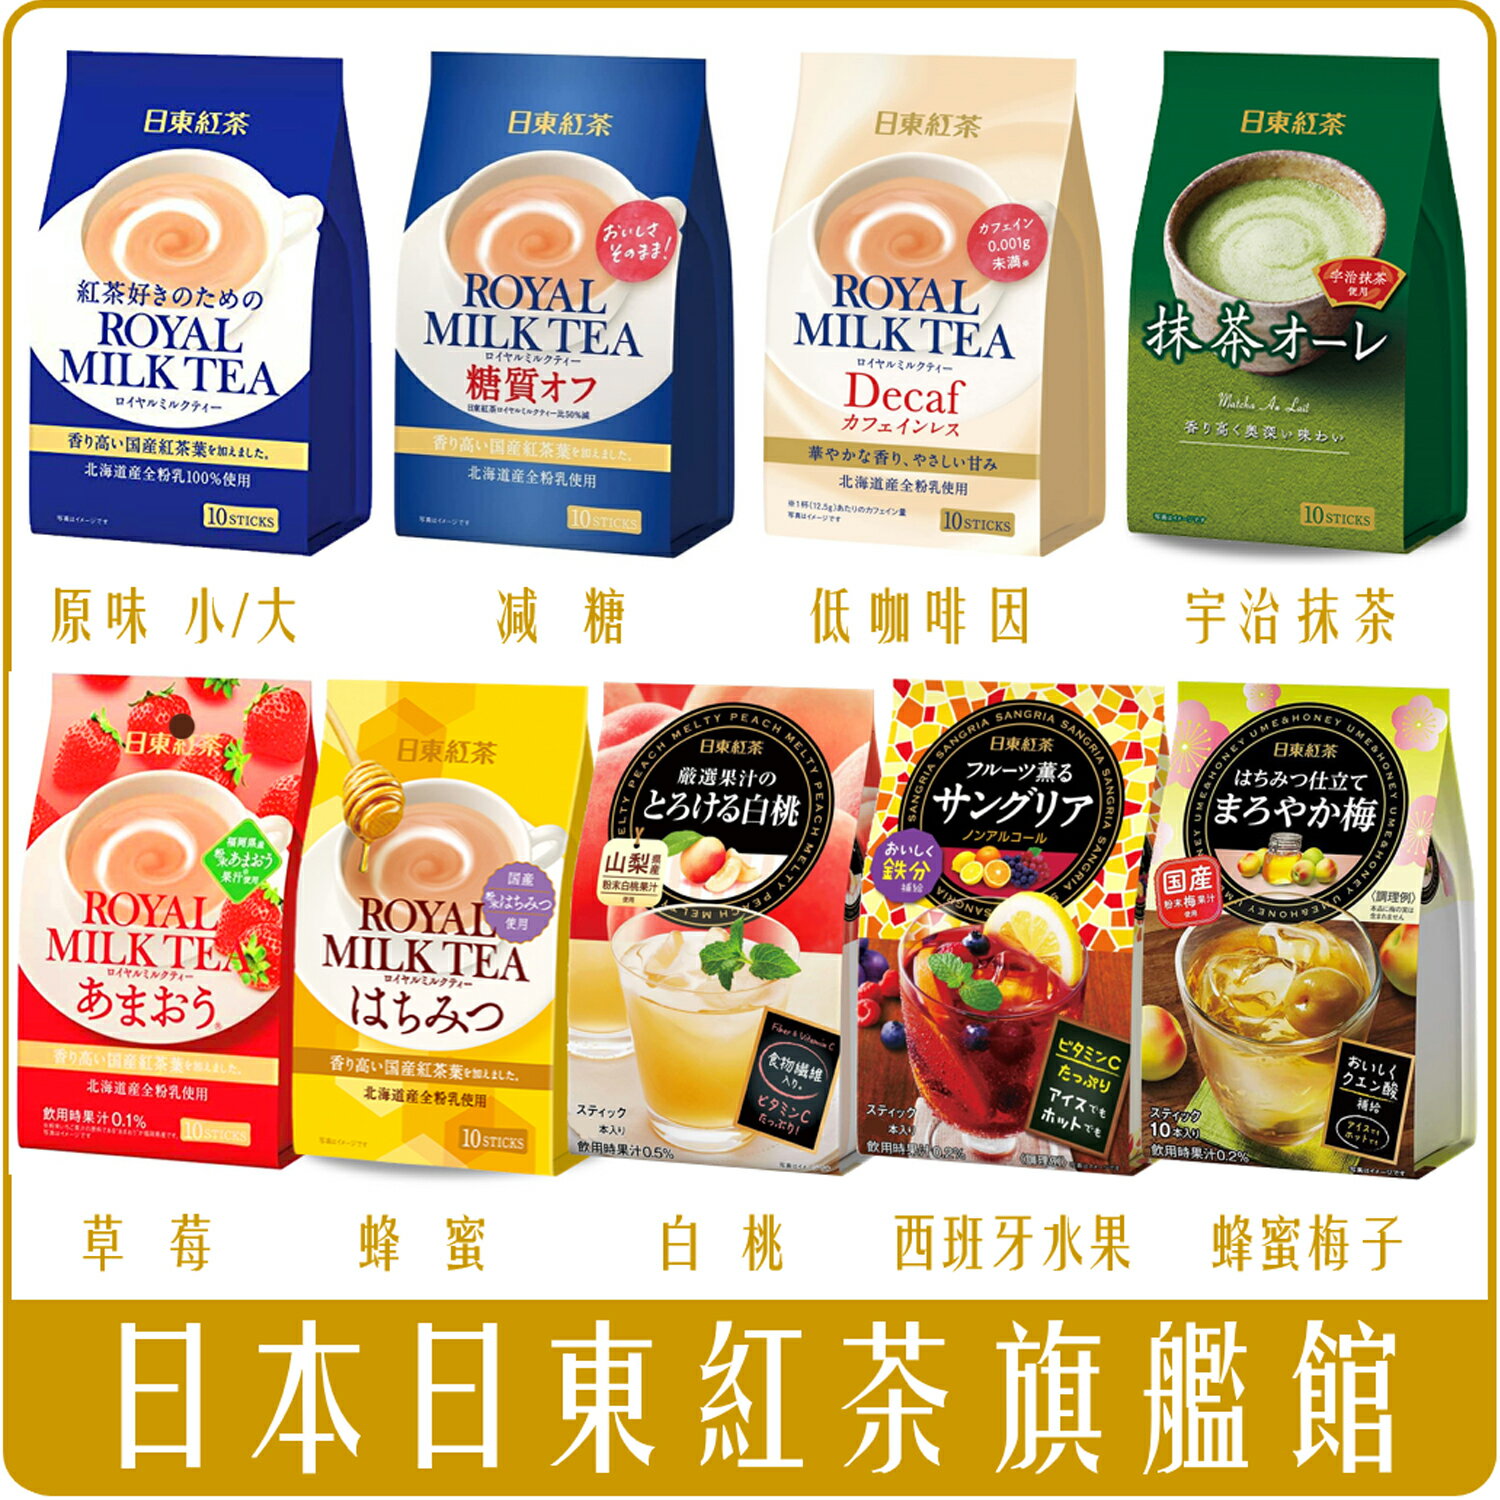 《 Chara 微百貨 》日本 日東 紅茶 皇家 奶茶 抹茶 歐蕾 北海道產100% Royal Milk Tea 草莓